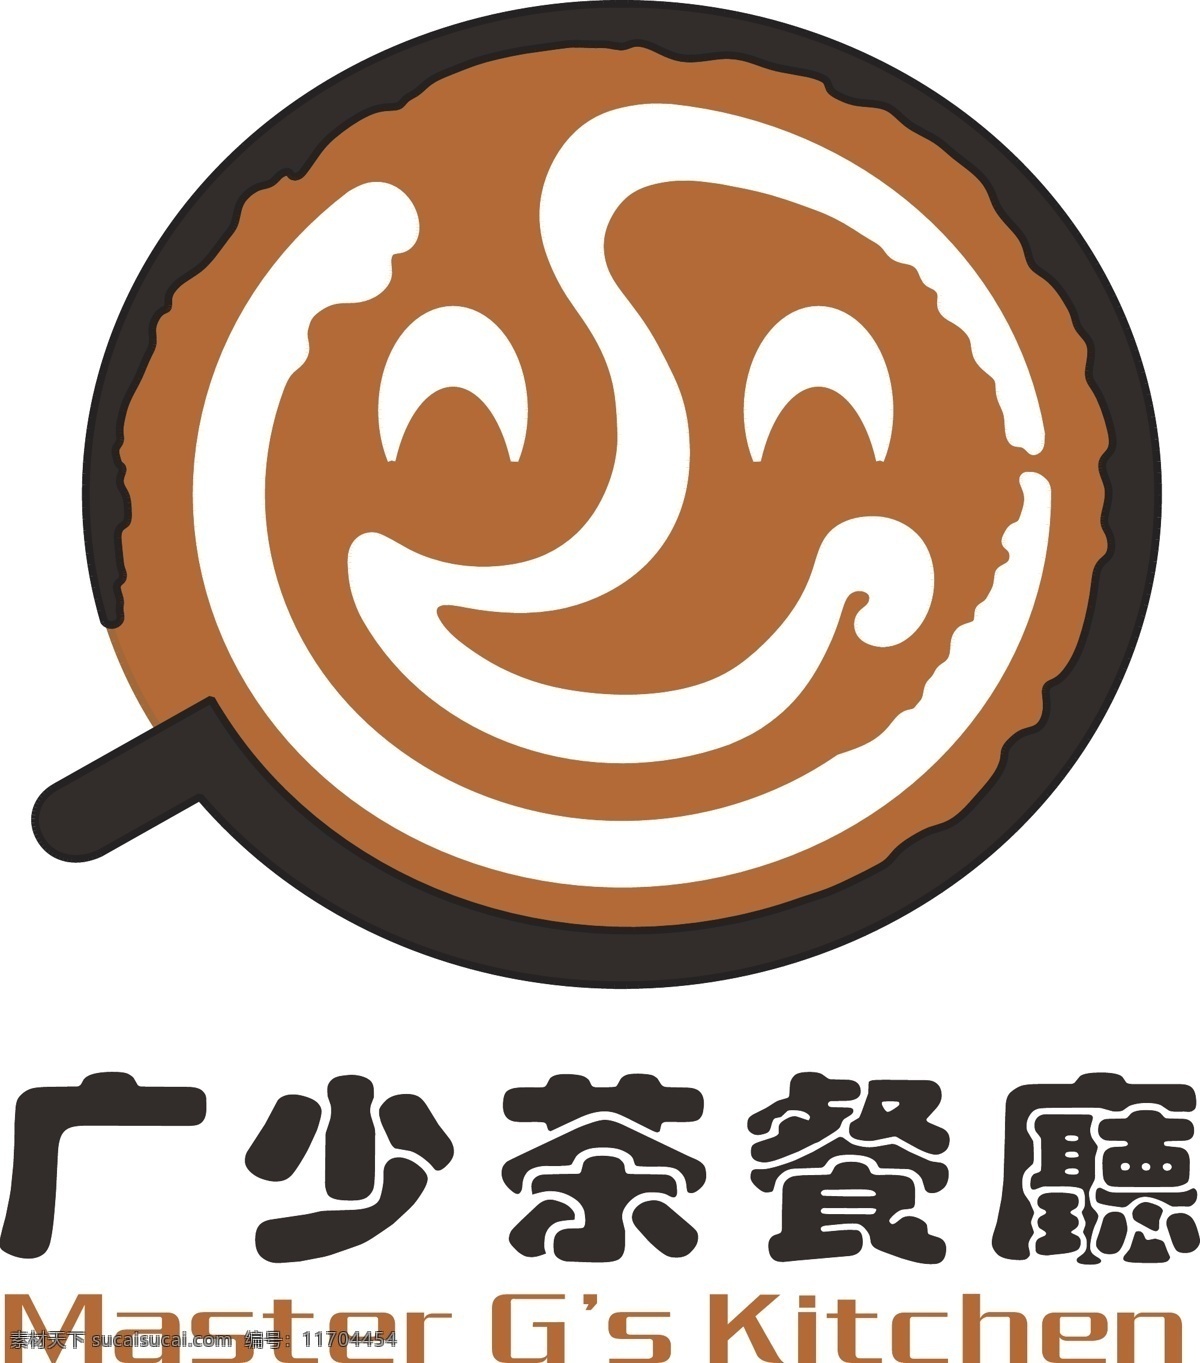 茶 餐厅 logo 茶餐厅 广少茶餐厅 标志 餐厅logo 品牌logo 矢量素材 标志图标 企业